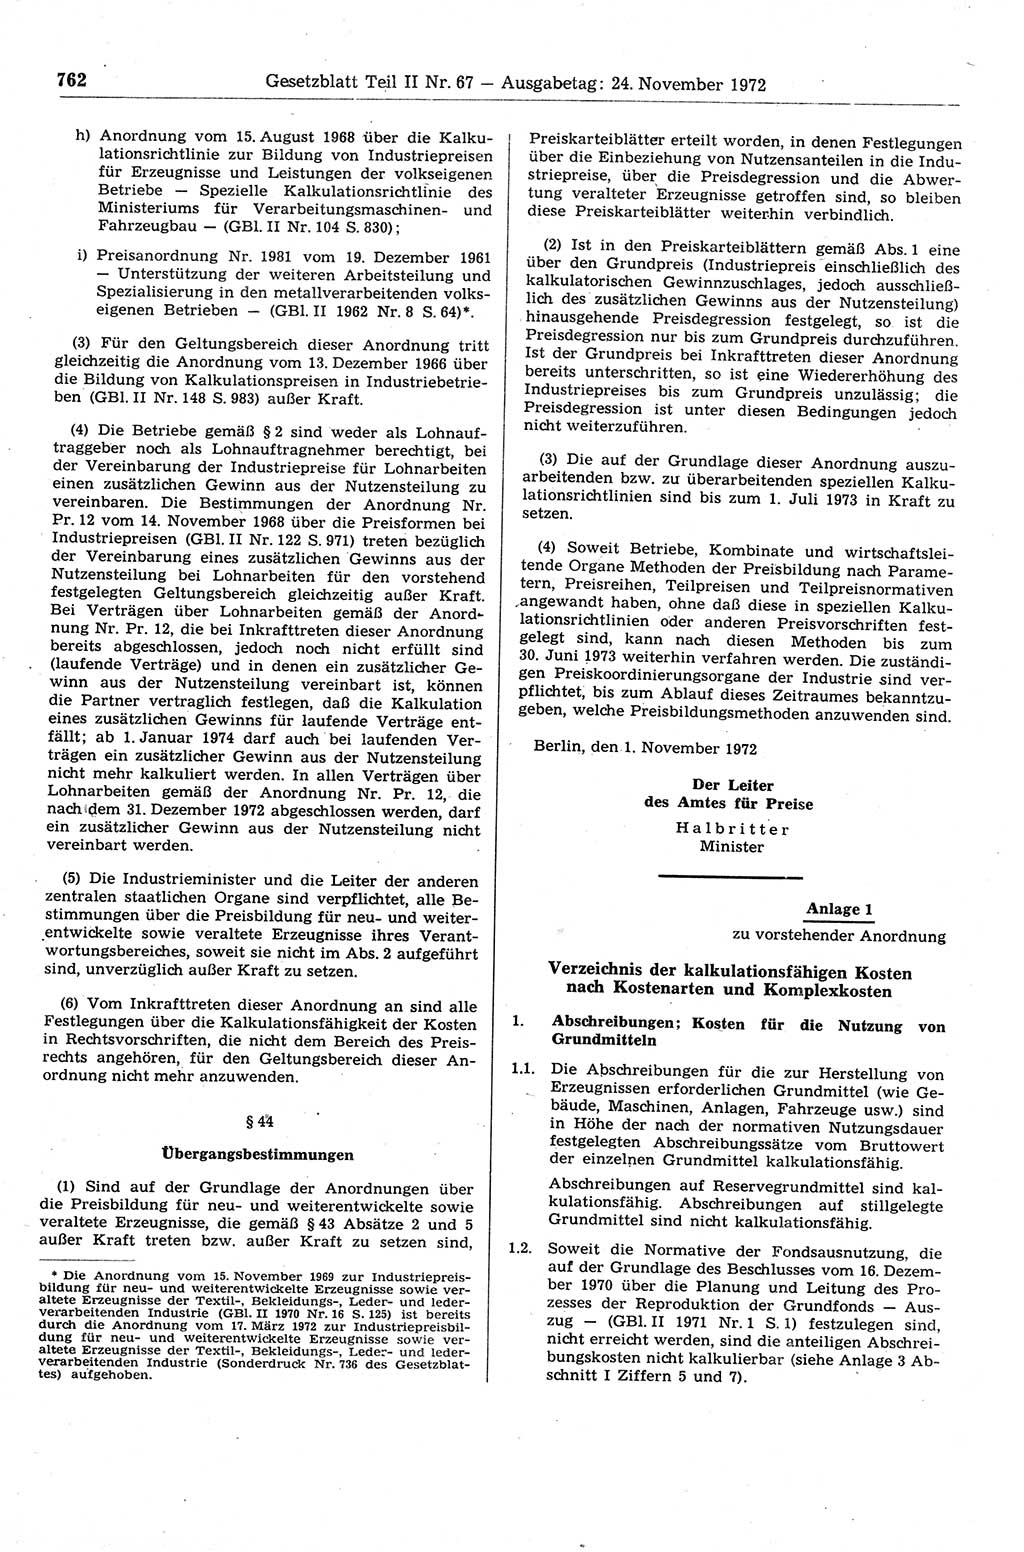 Gesetzblatt (GBl.) der Deutschen Demokratischen Republik (DDR) Teil ⅠⅠ 1972, Seite 762 (GBl. DDR ⅠⅠ 1972, S. 762)